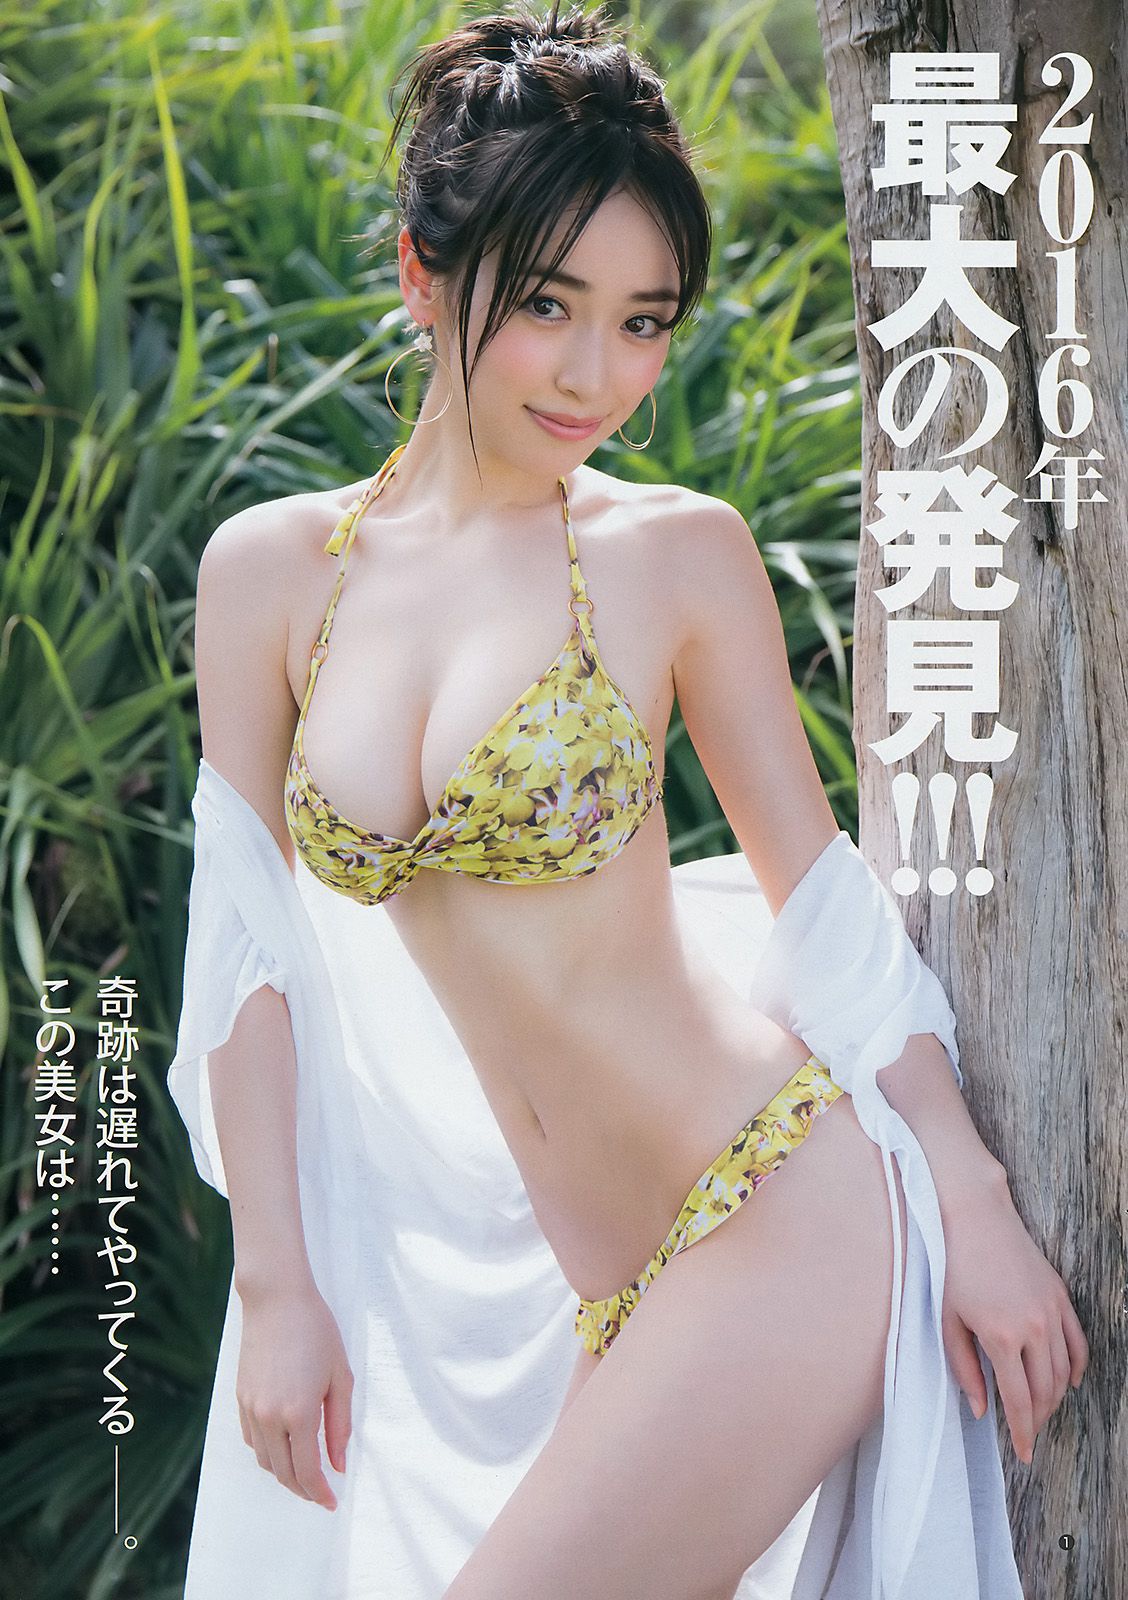 Rika Izumi Fumika Baba Riho Minami [Weekly Young Jump] 2016 No.52 Photo Magazine Page 5 No.5b0a33